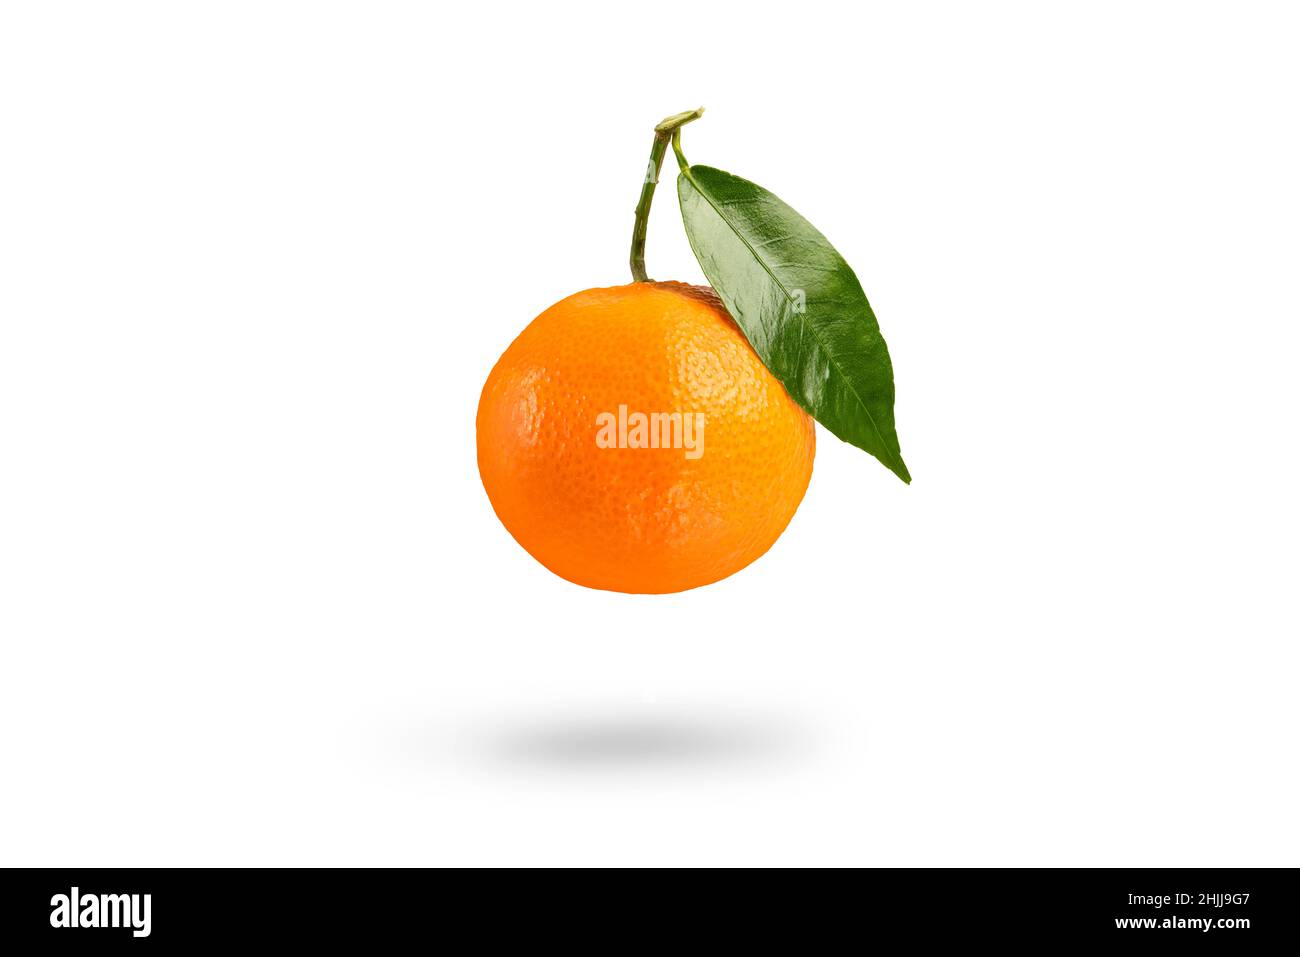 Mandarine à feuilles vertes jette une ombre .mandarine fraîche sur un fond blanc isolé.Gros plan sur la texture de la mandarine. Banque D'Images